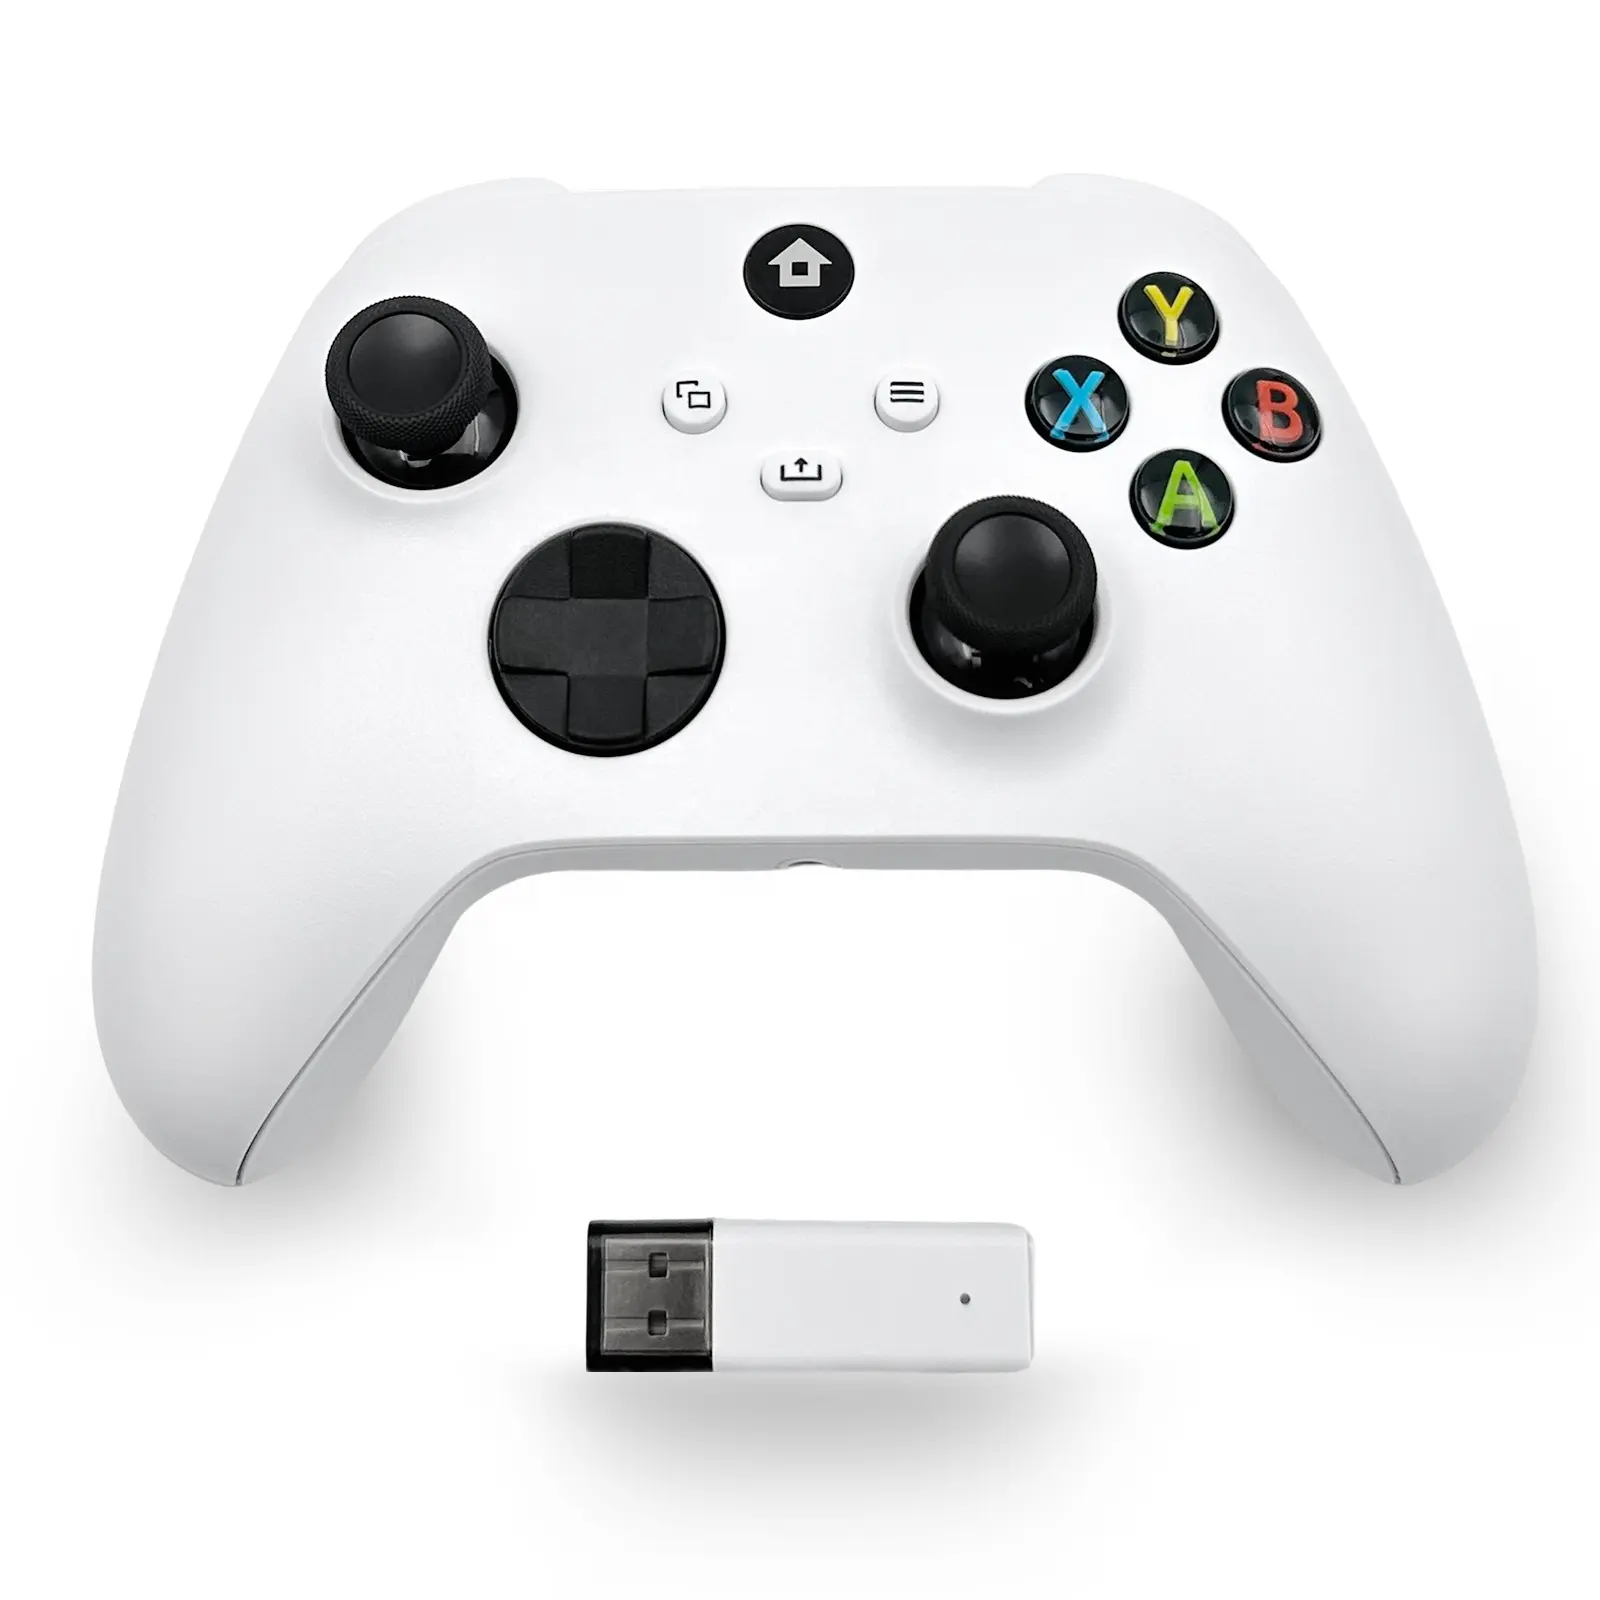 جهاز تحكم لاسلكي 2.4G عالي الجودة بأربع محركات مدمجة مع مقبس صوت لجهاز Xbox one/one S